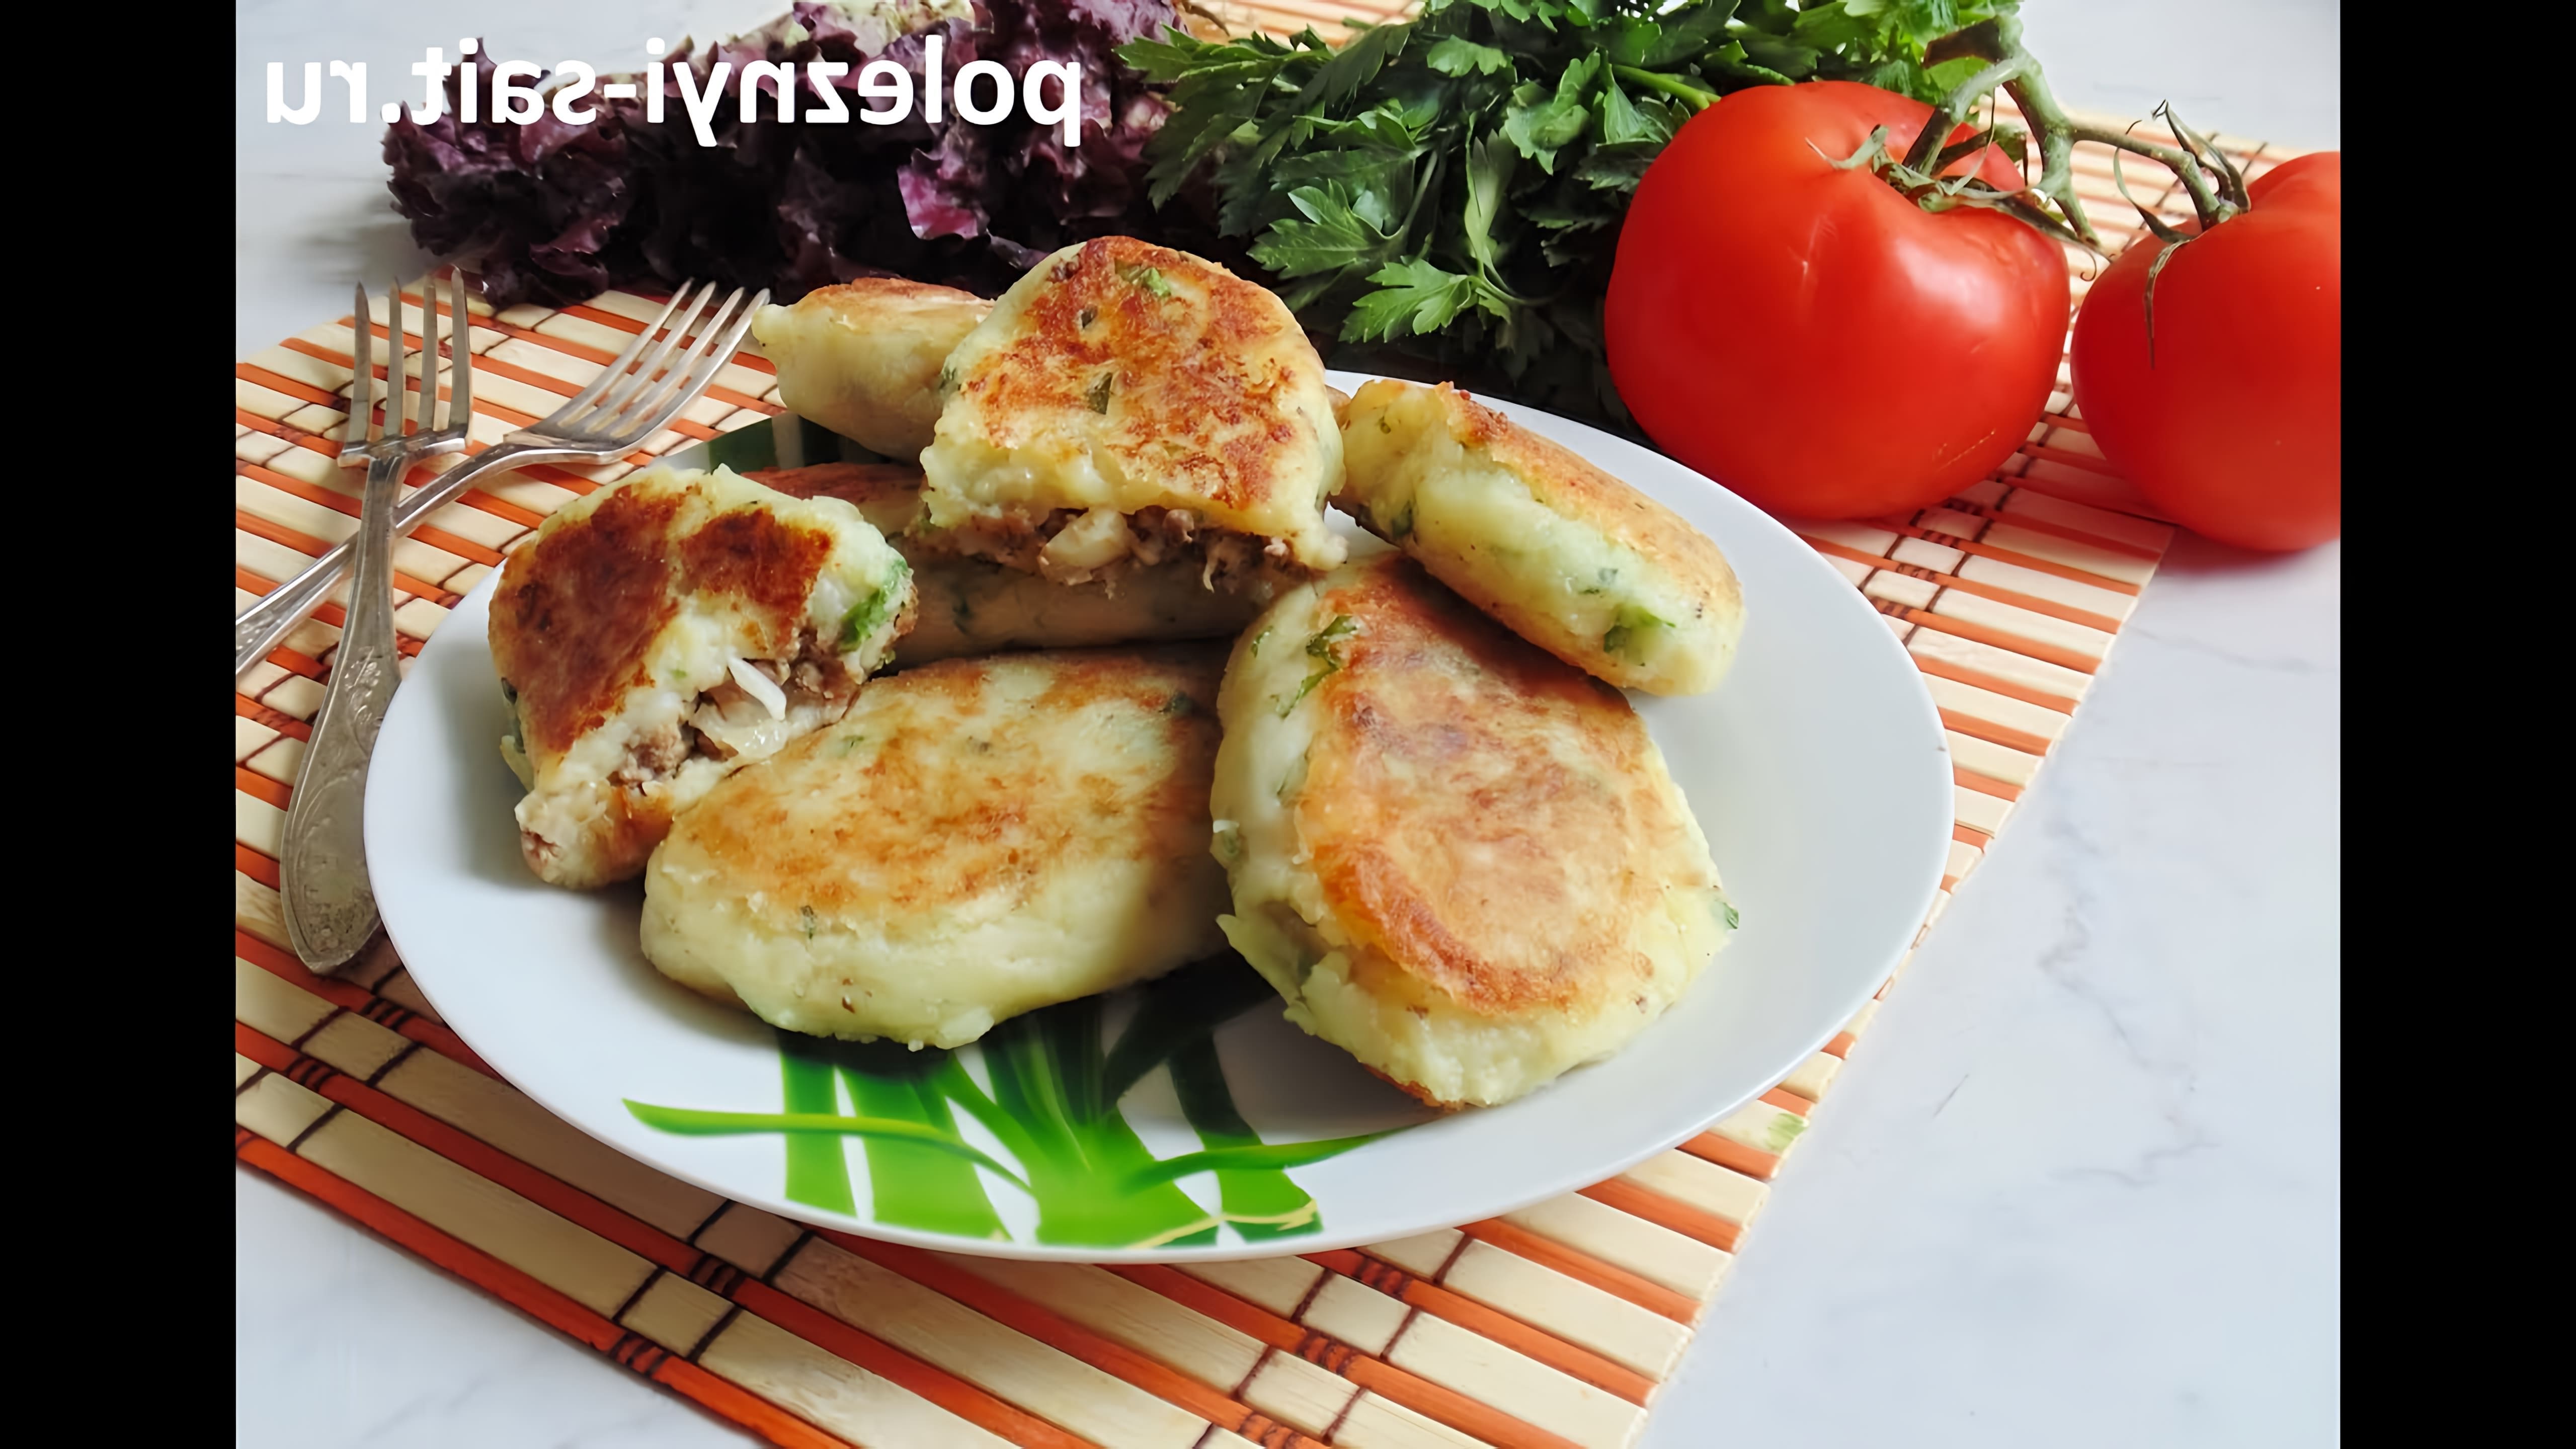 poleznyi-sait/Зразы - простое, вкусное и сытное блюдо. Причем хорошо это блюдо тем, что можно готовить его с... 